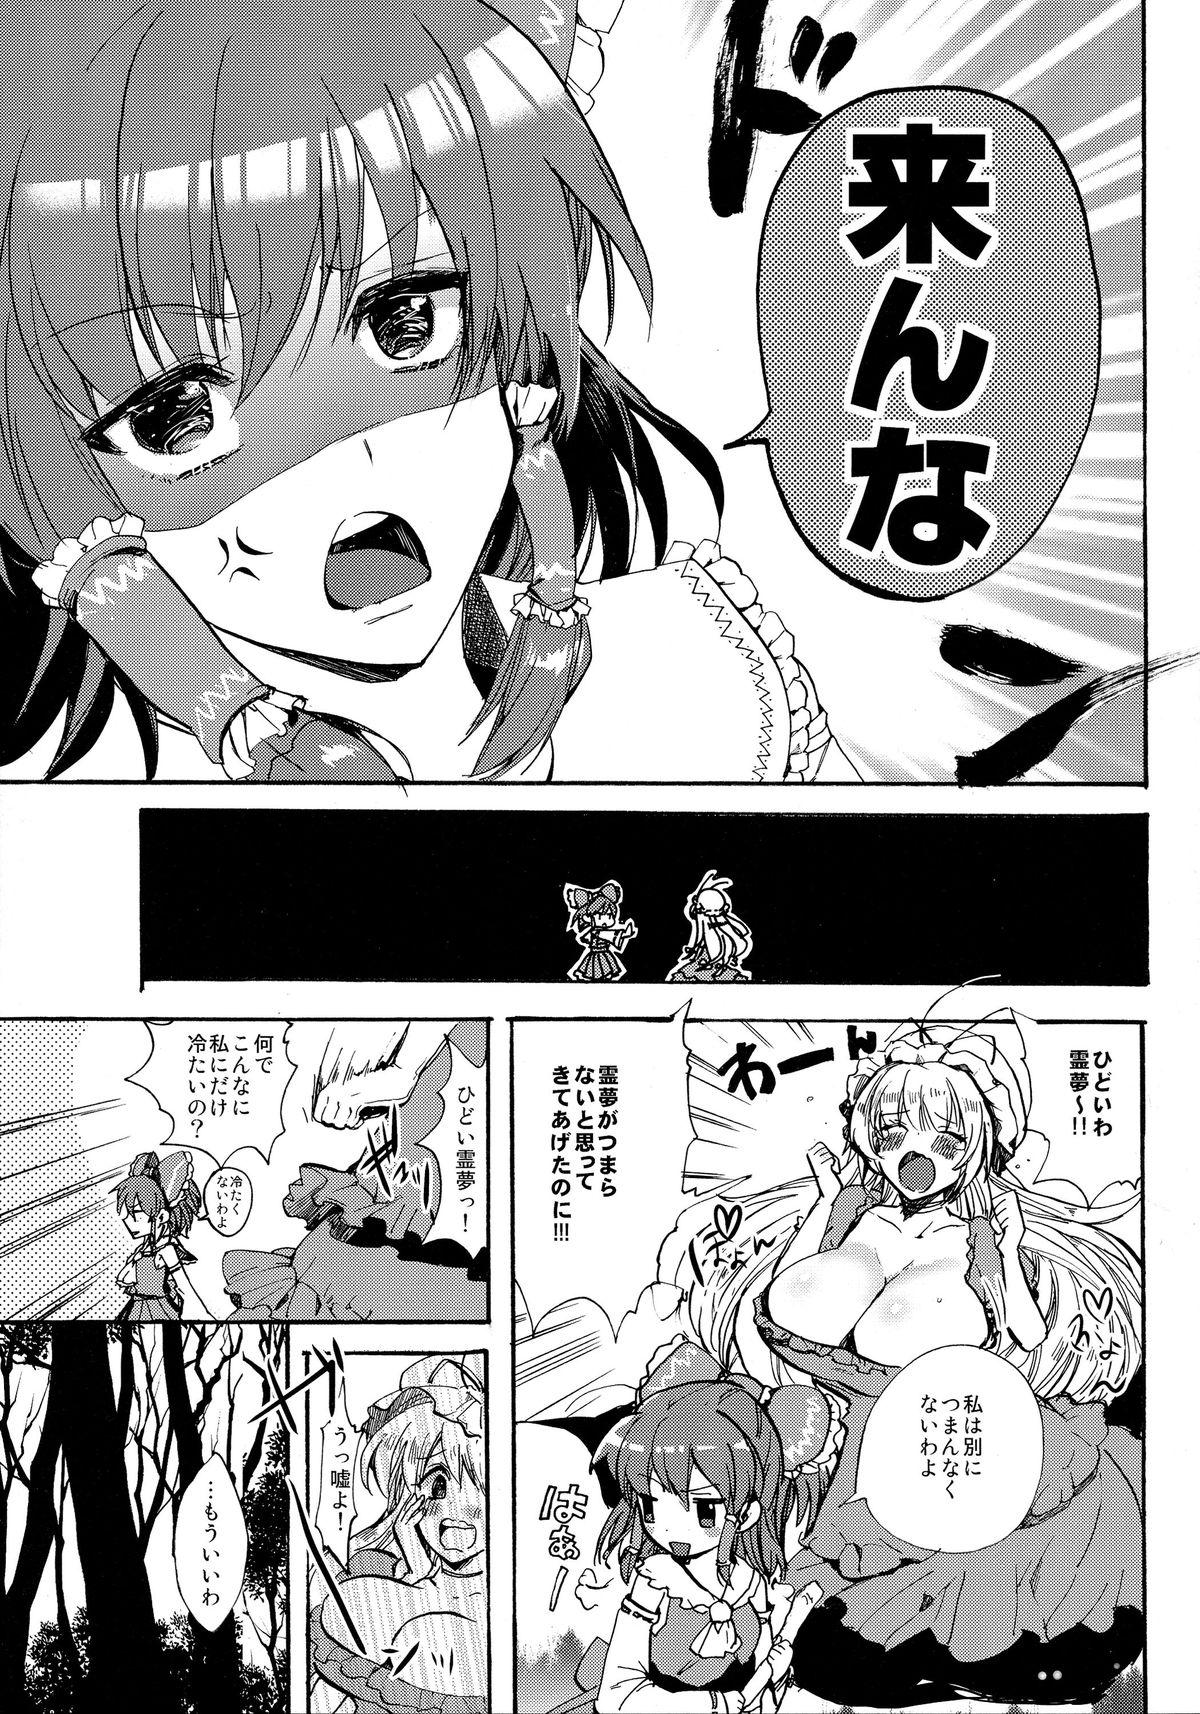 Tit Watashi no Reimu ga Konnani Tsumetai Hazu ga nai - Touhou project Cream Pie - Page 7